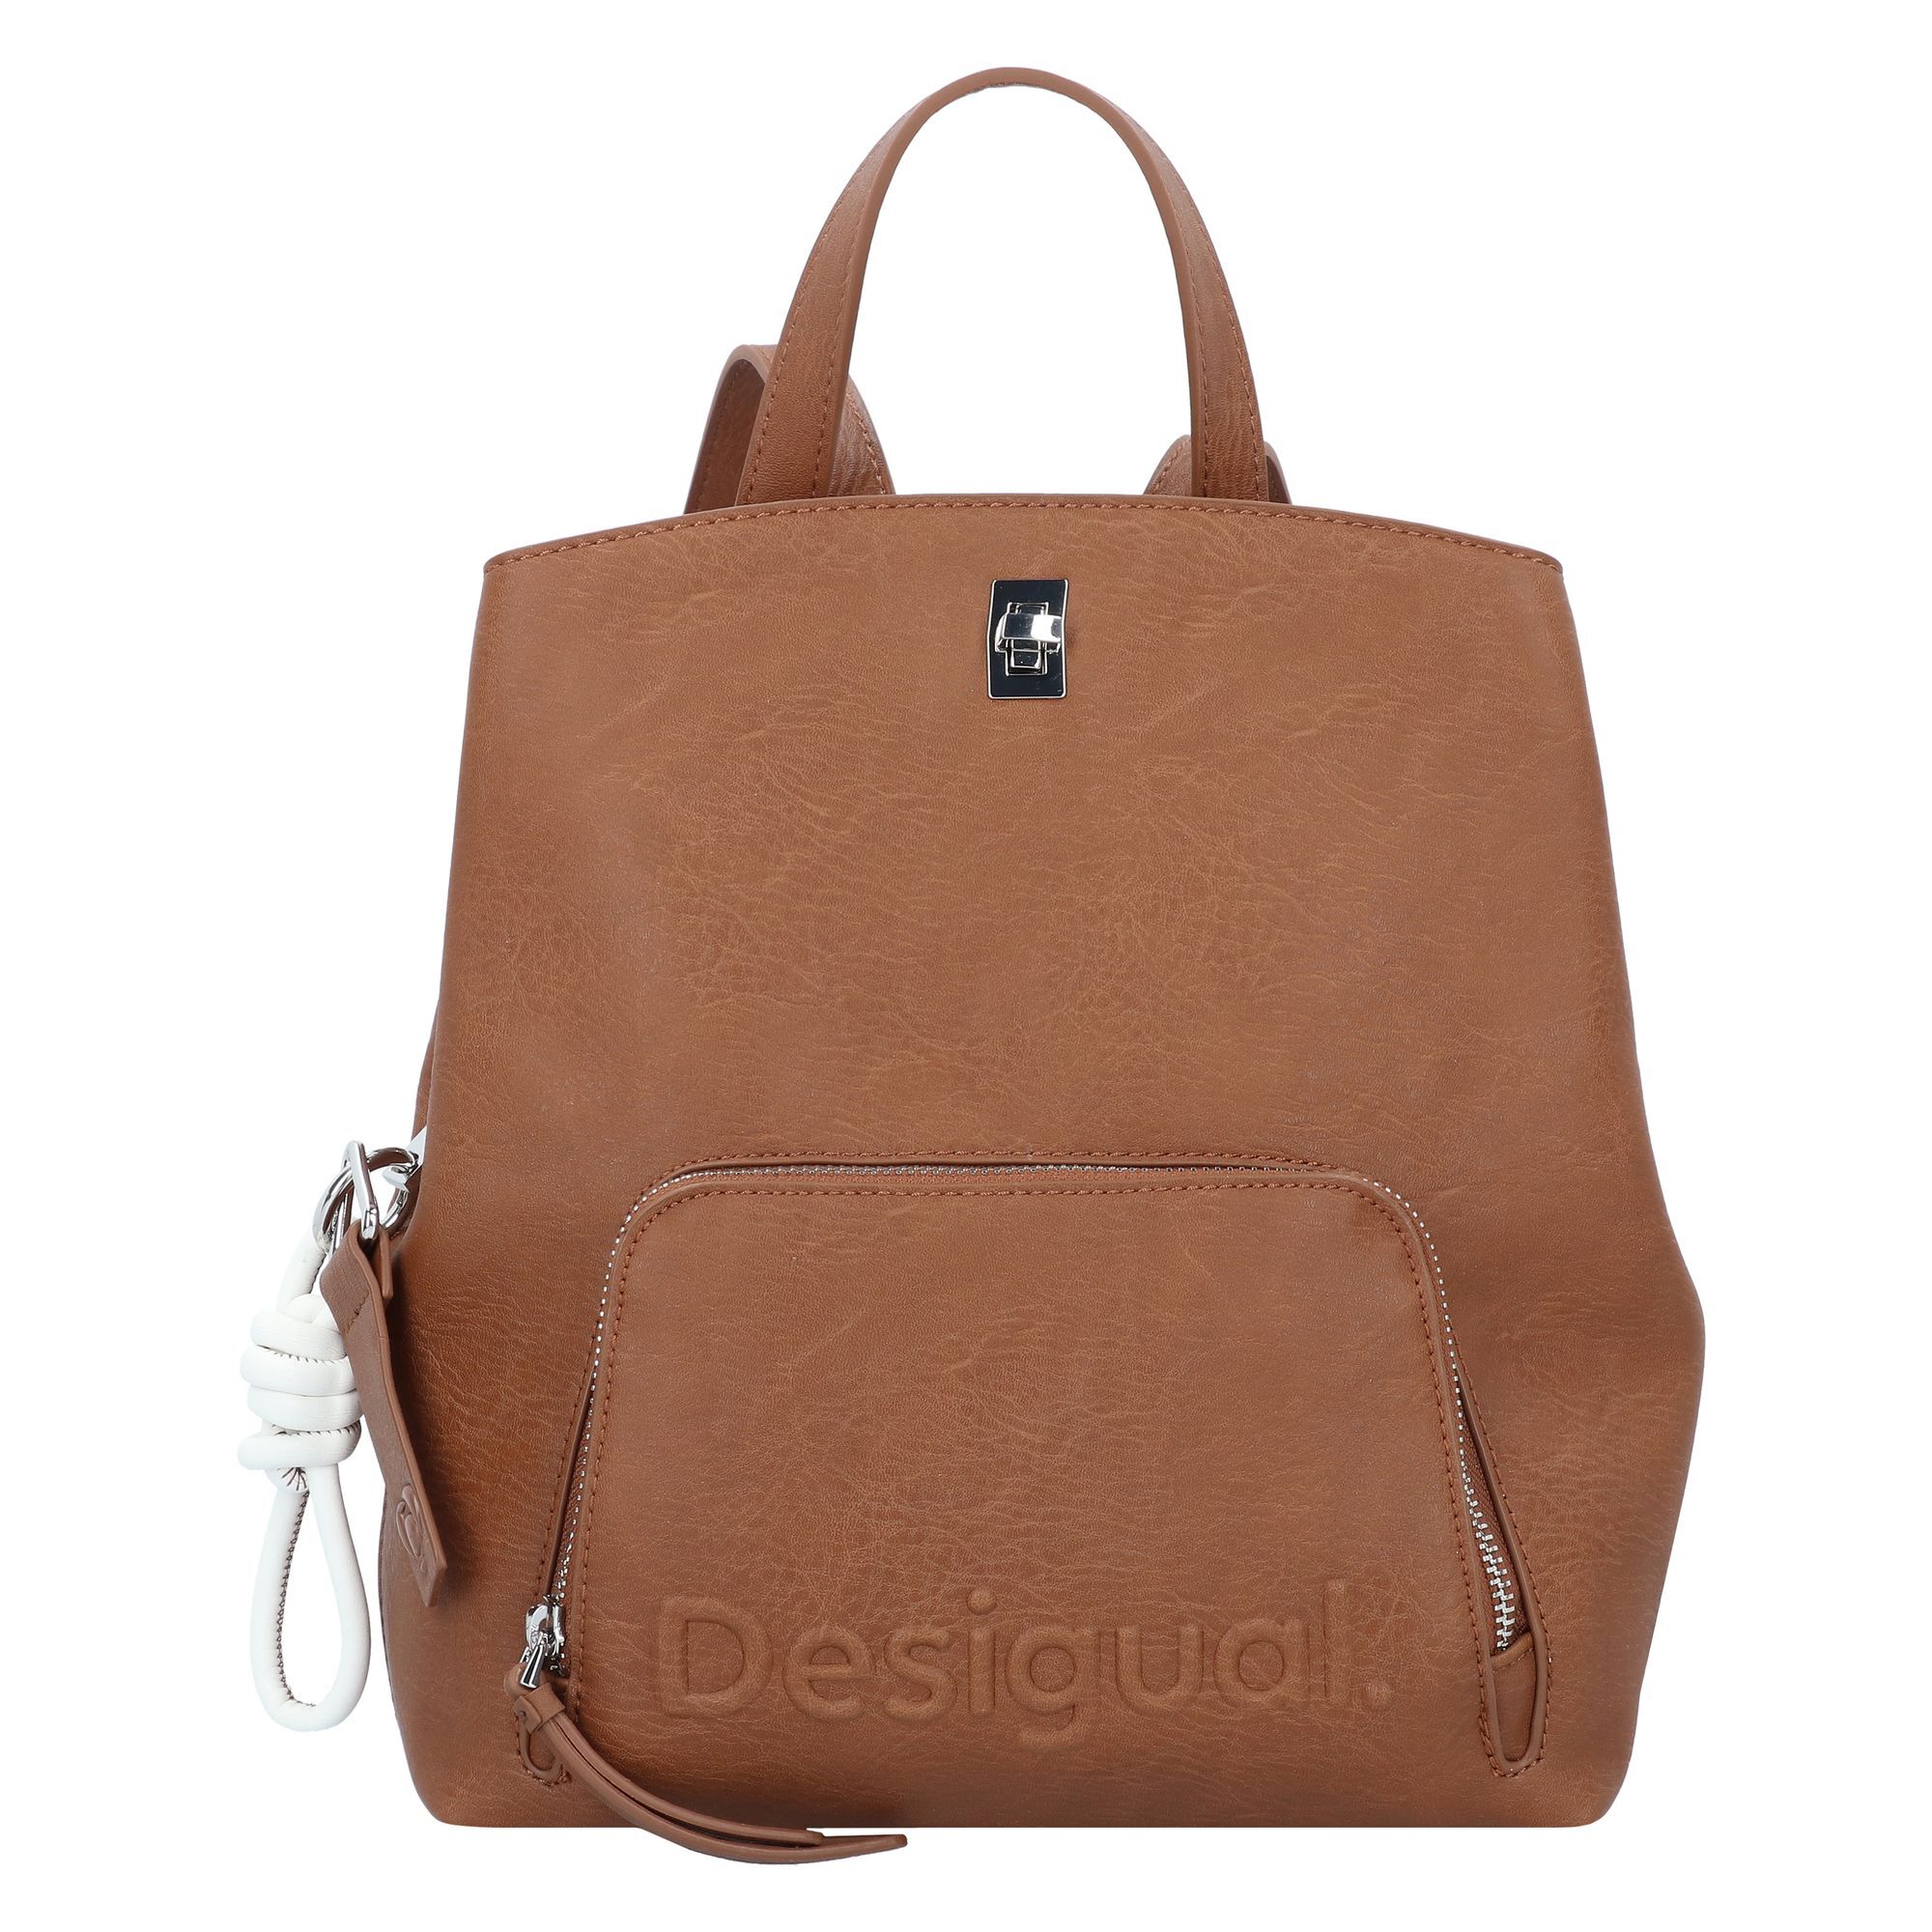 Рюкзак Desigual Sumy City 29.5 cm, коричневый